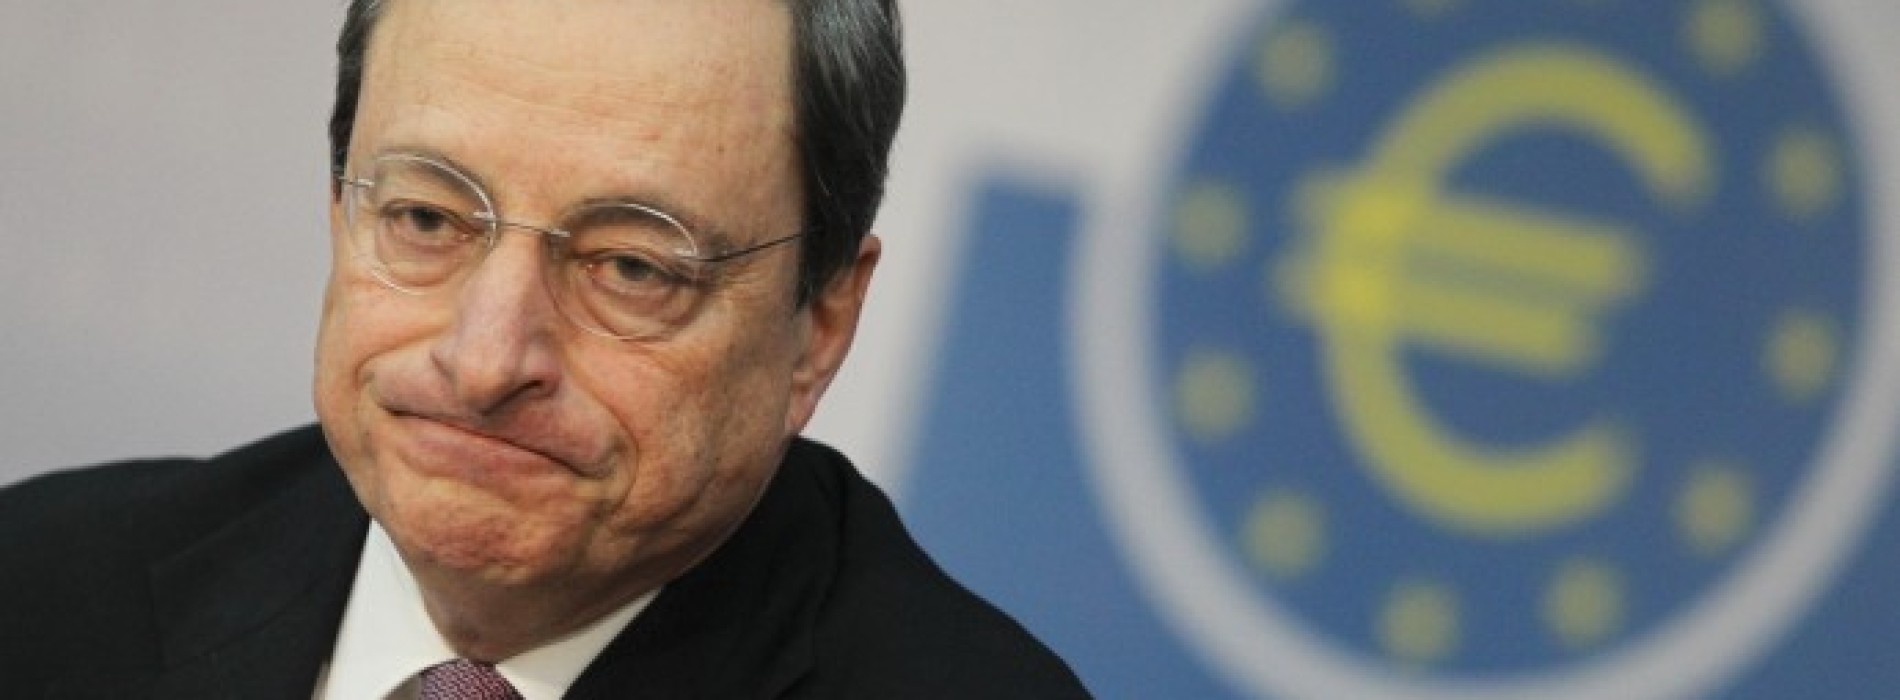 Poranny komentarz walutowy – Euro boi się Draghiego